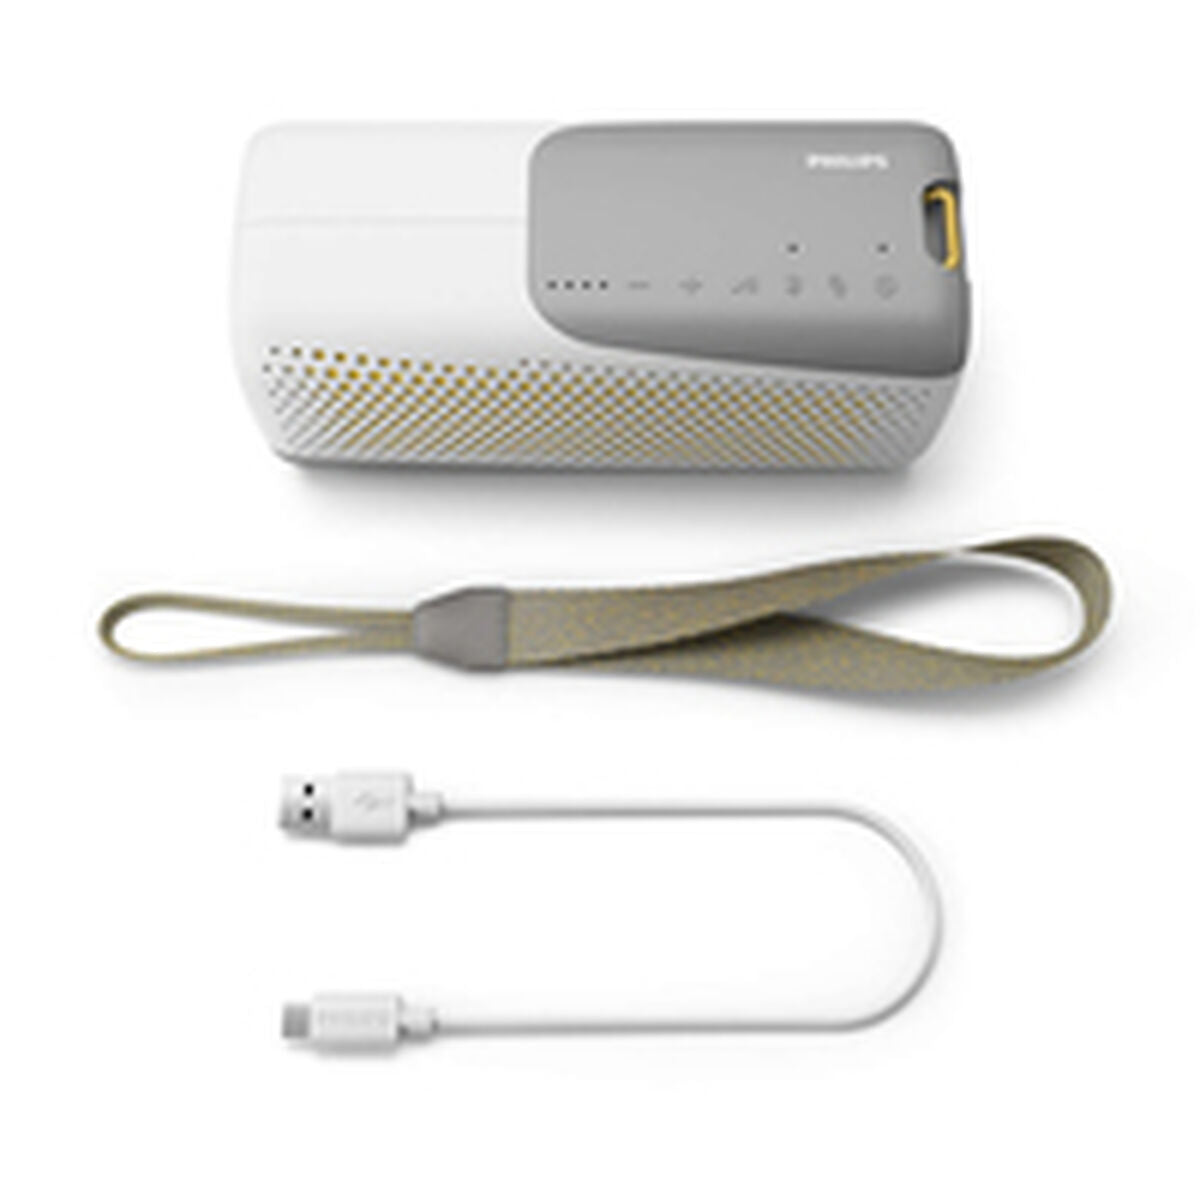 Altoparlante Bluetooth Portatile Philips Wireless speaker Bianco - Disponibile in 3-4 giorni lavorativi